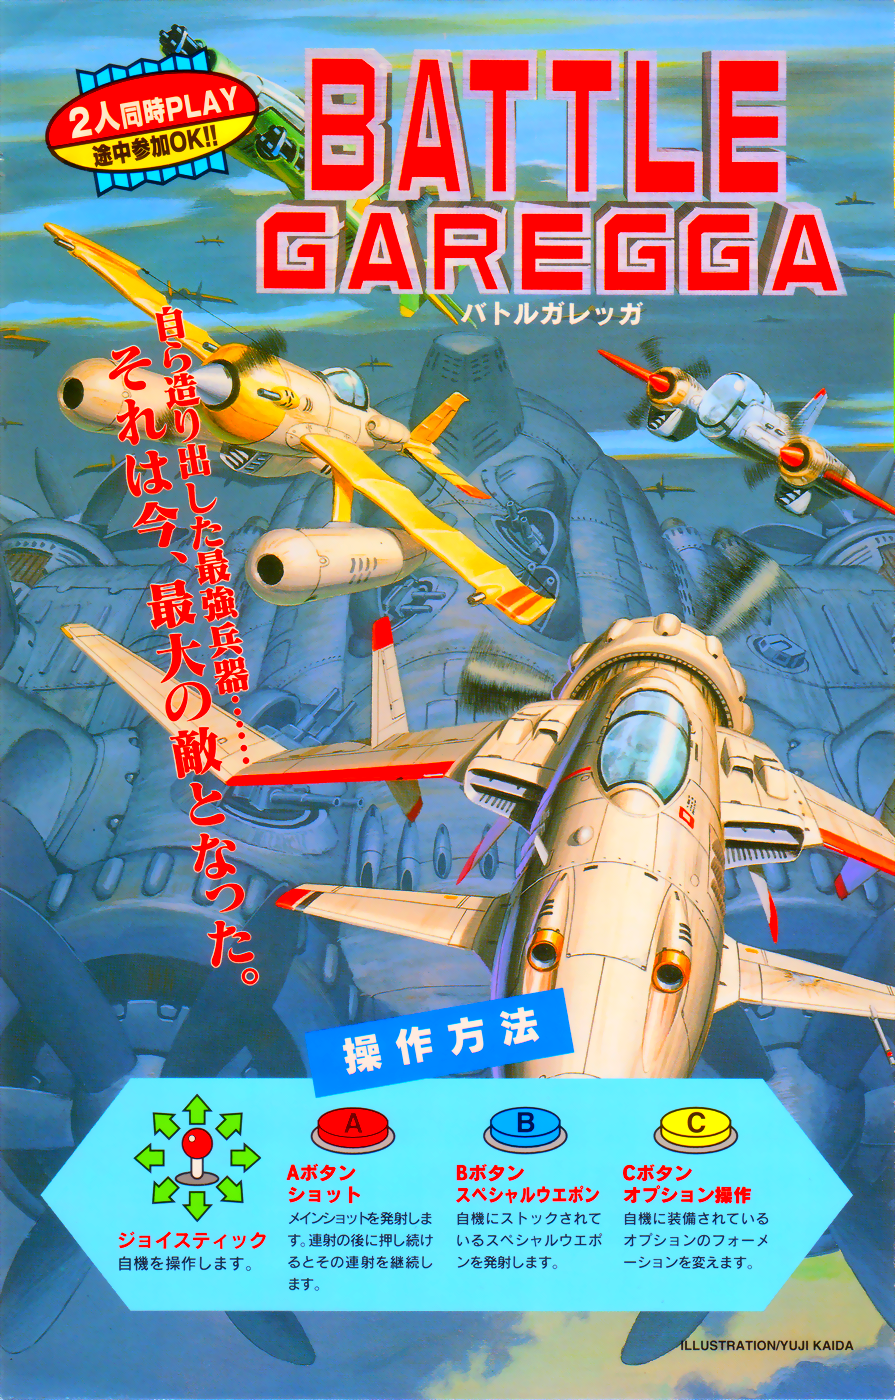 Battle Garegga - New Version (Austria / Hong Kong) (Sat Mar 2 1996) flyer